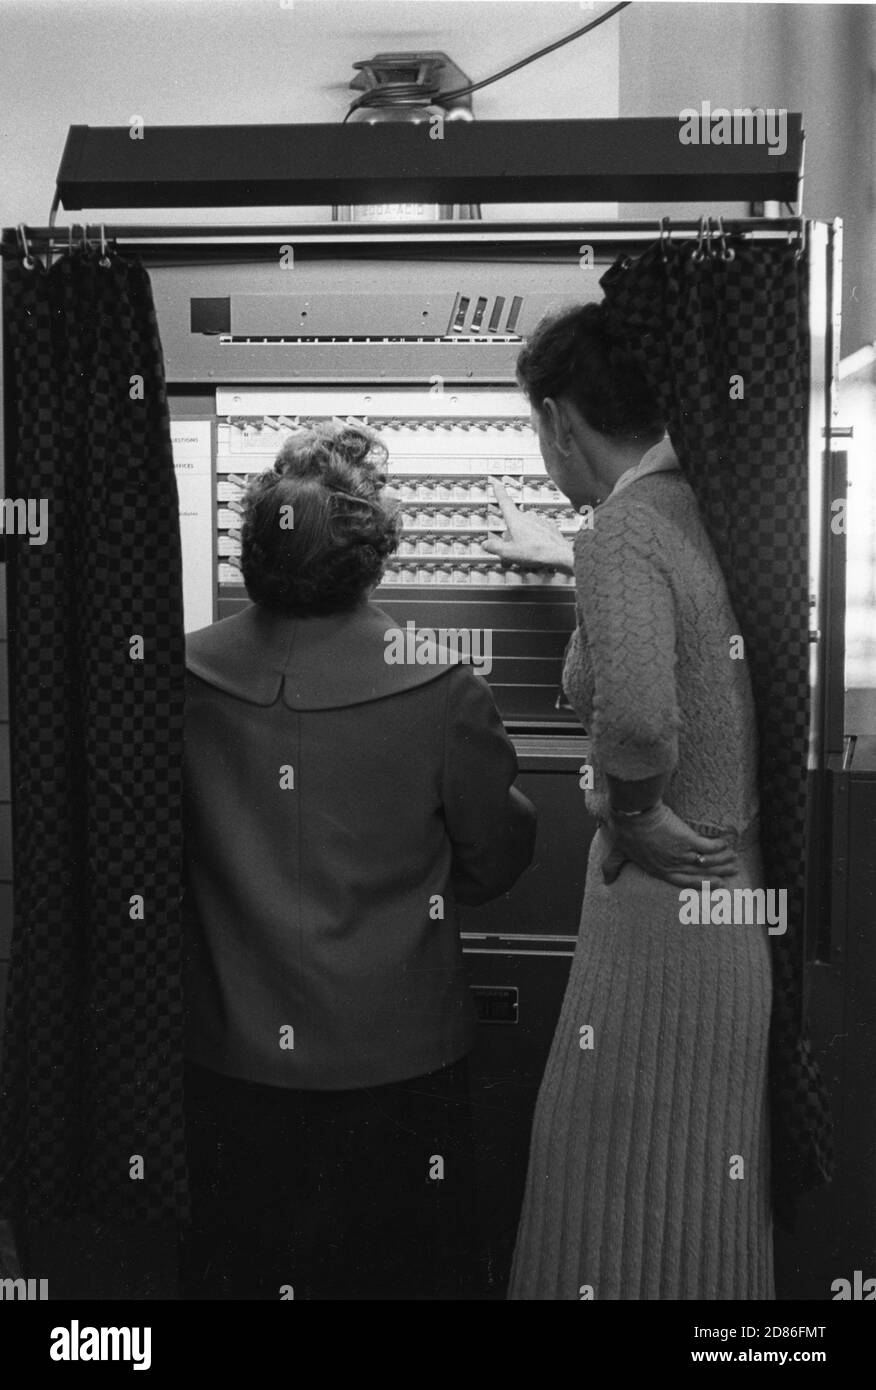 Die Wähler in dieser Gemeinschaft benutzen zum ersten Mal Wahlmaschinen. Ein Wahlbeamter erklärt einem Wähler das Wahlverfahren für die Kandidaten ihrer Wahl, Falls Church, VA, 11/8/1960. (Foto von Edwin Huffman/United States Information Agency/RBM Vintage Images) Stockfoto